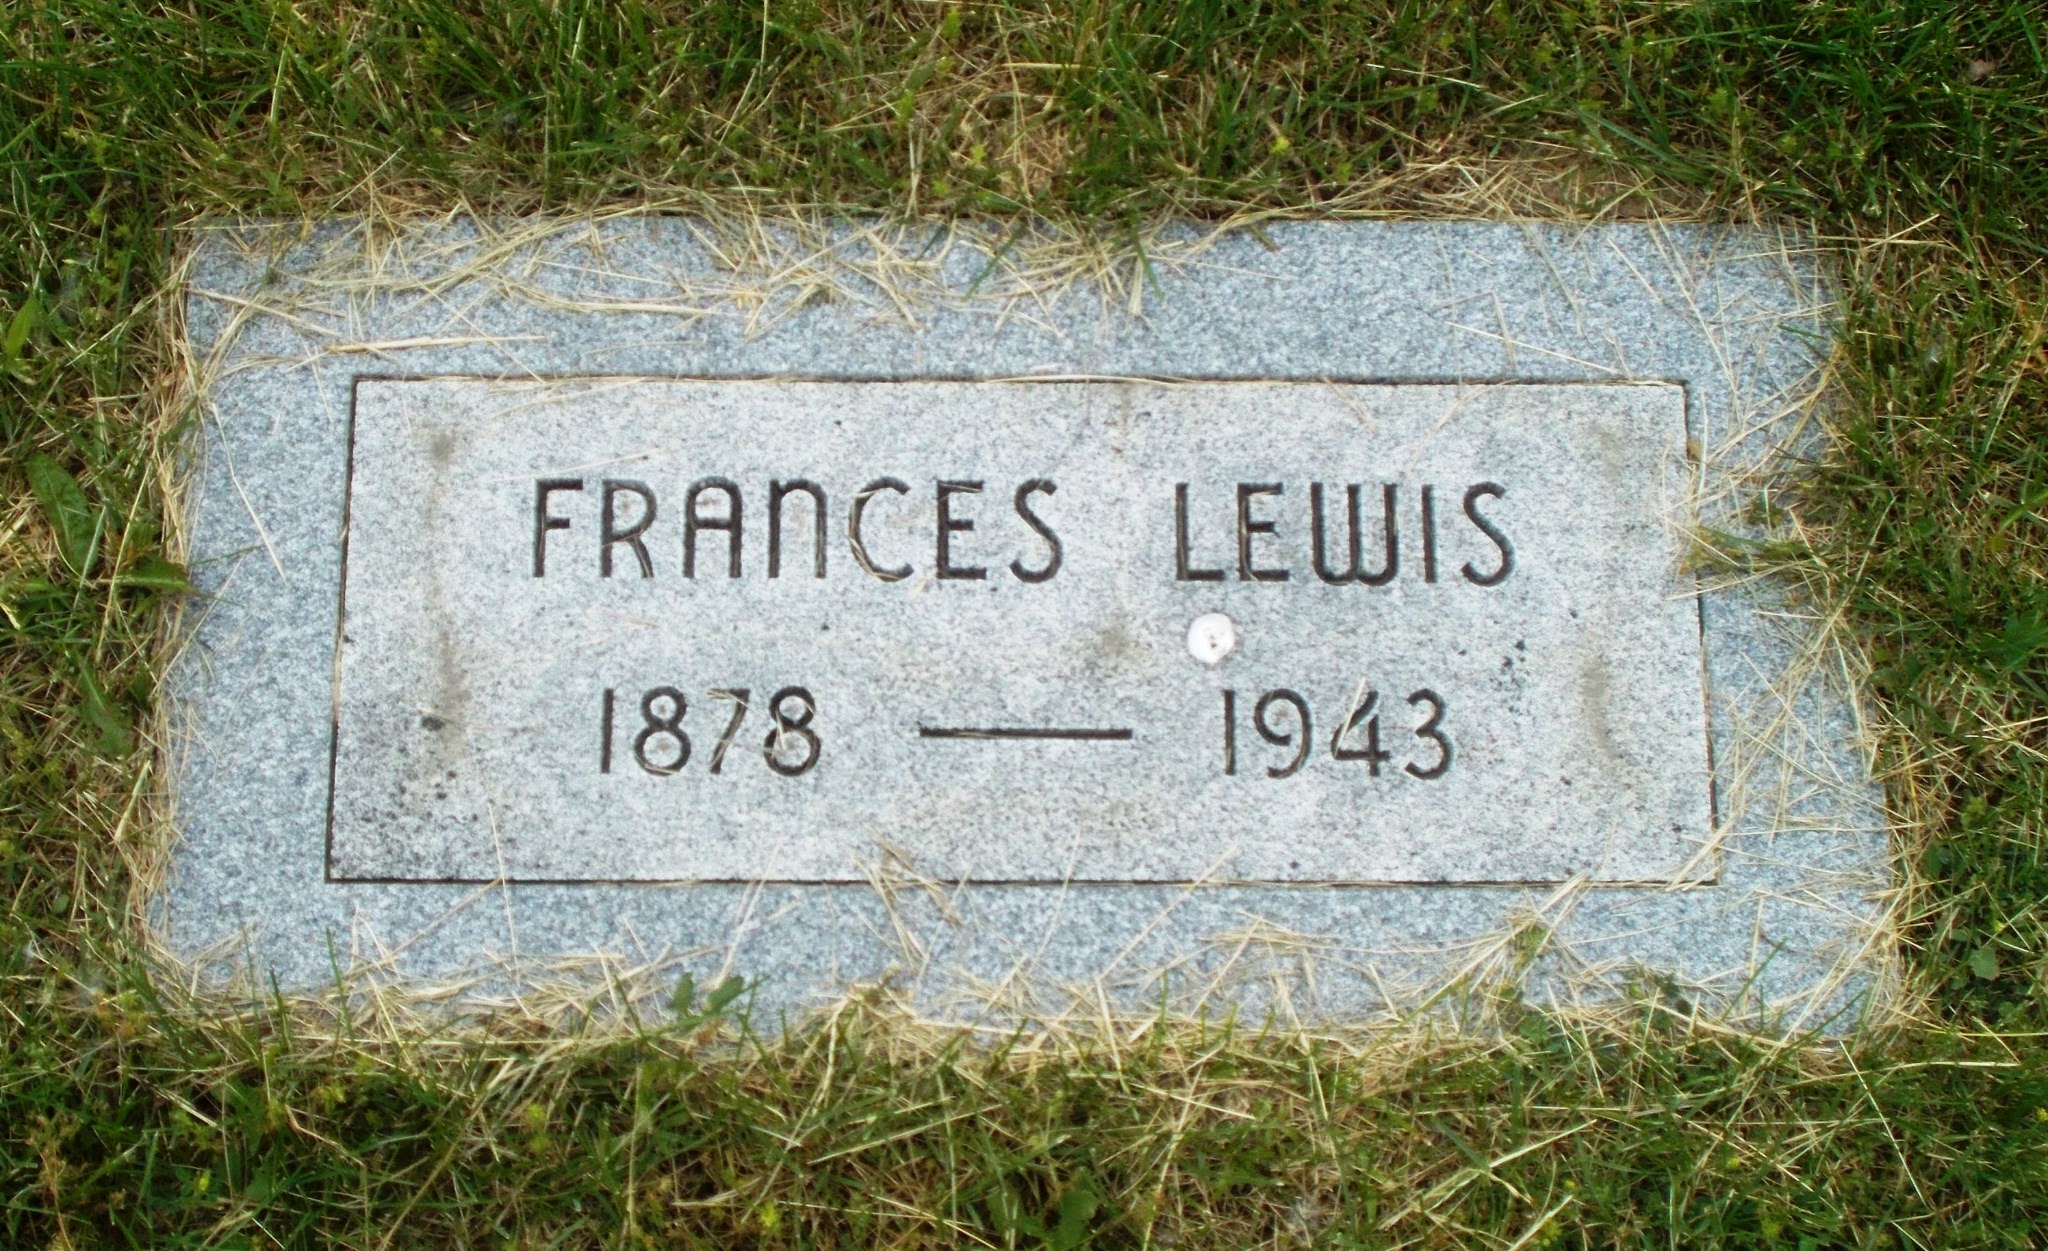 Frances Lewis